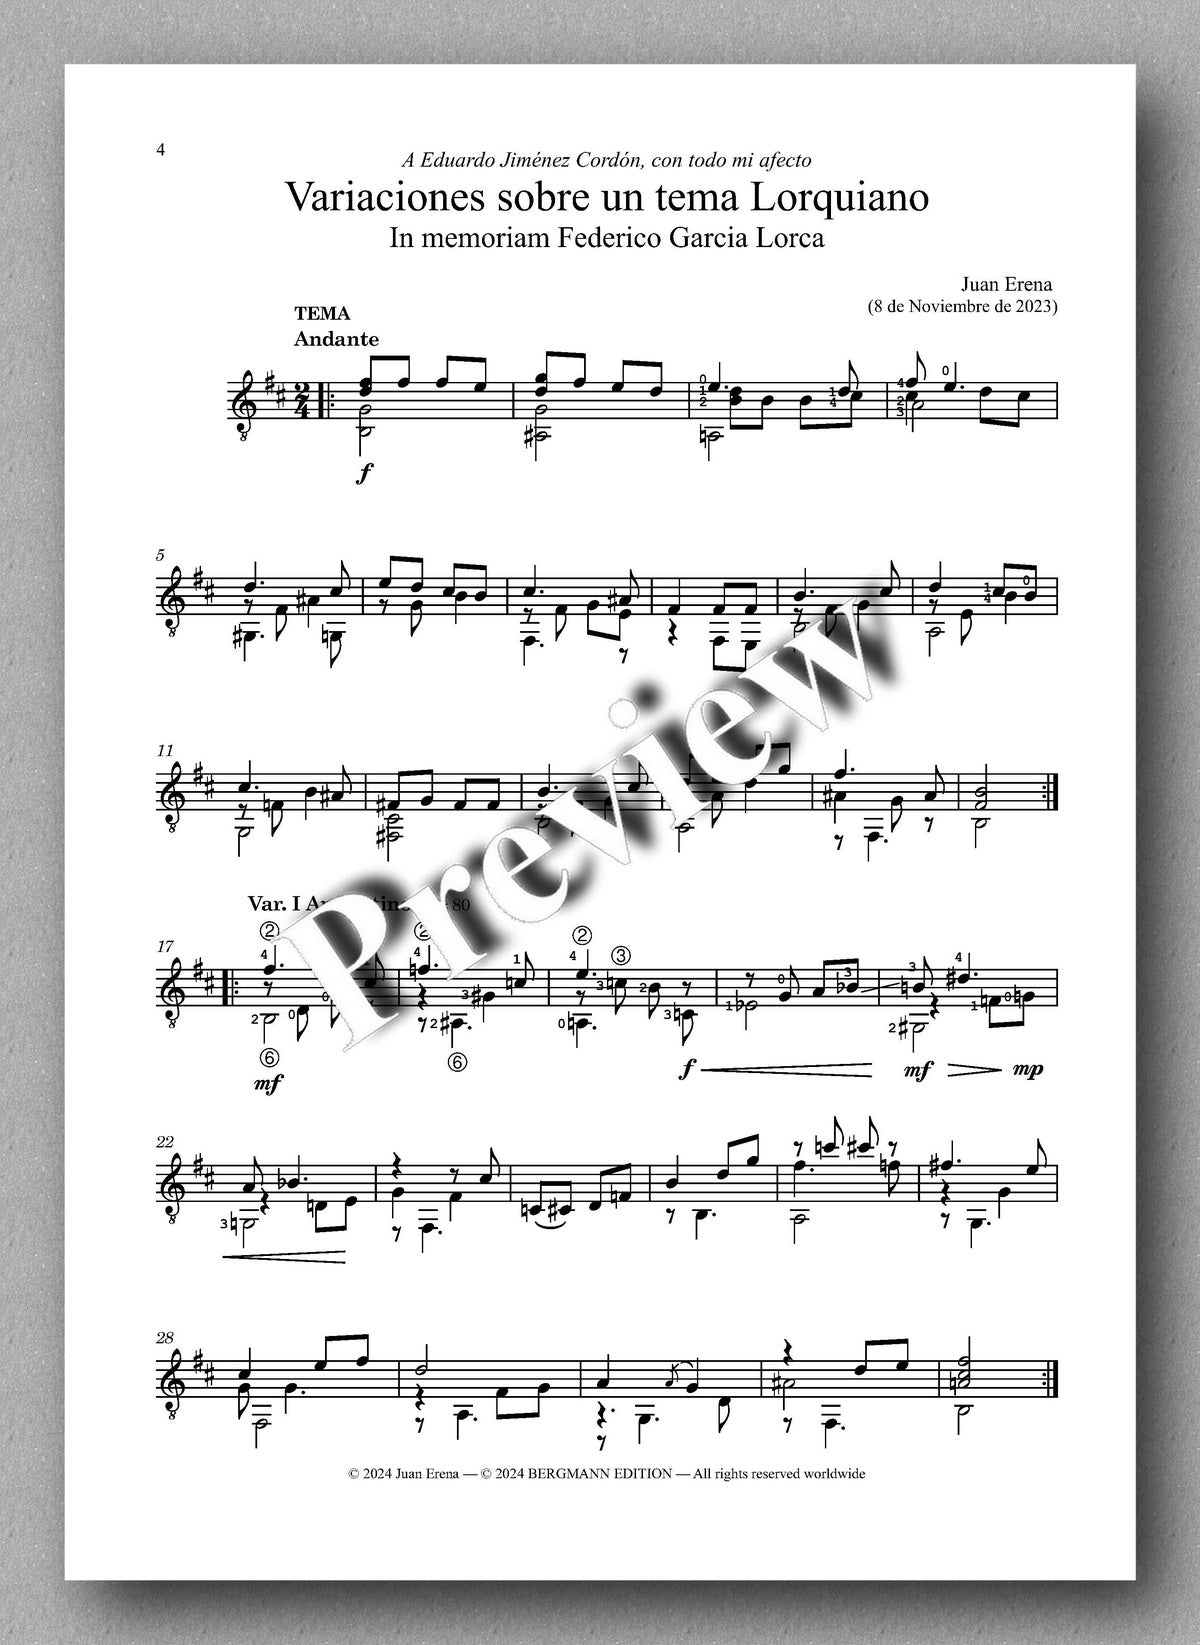 Juan Erena, Variaciones sobre un tema Lorquiano - preview of the music score 1